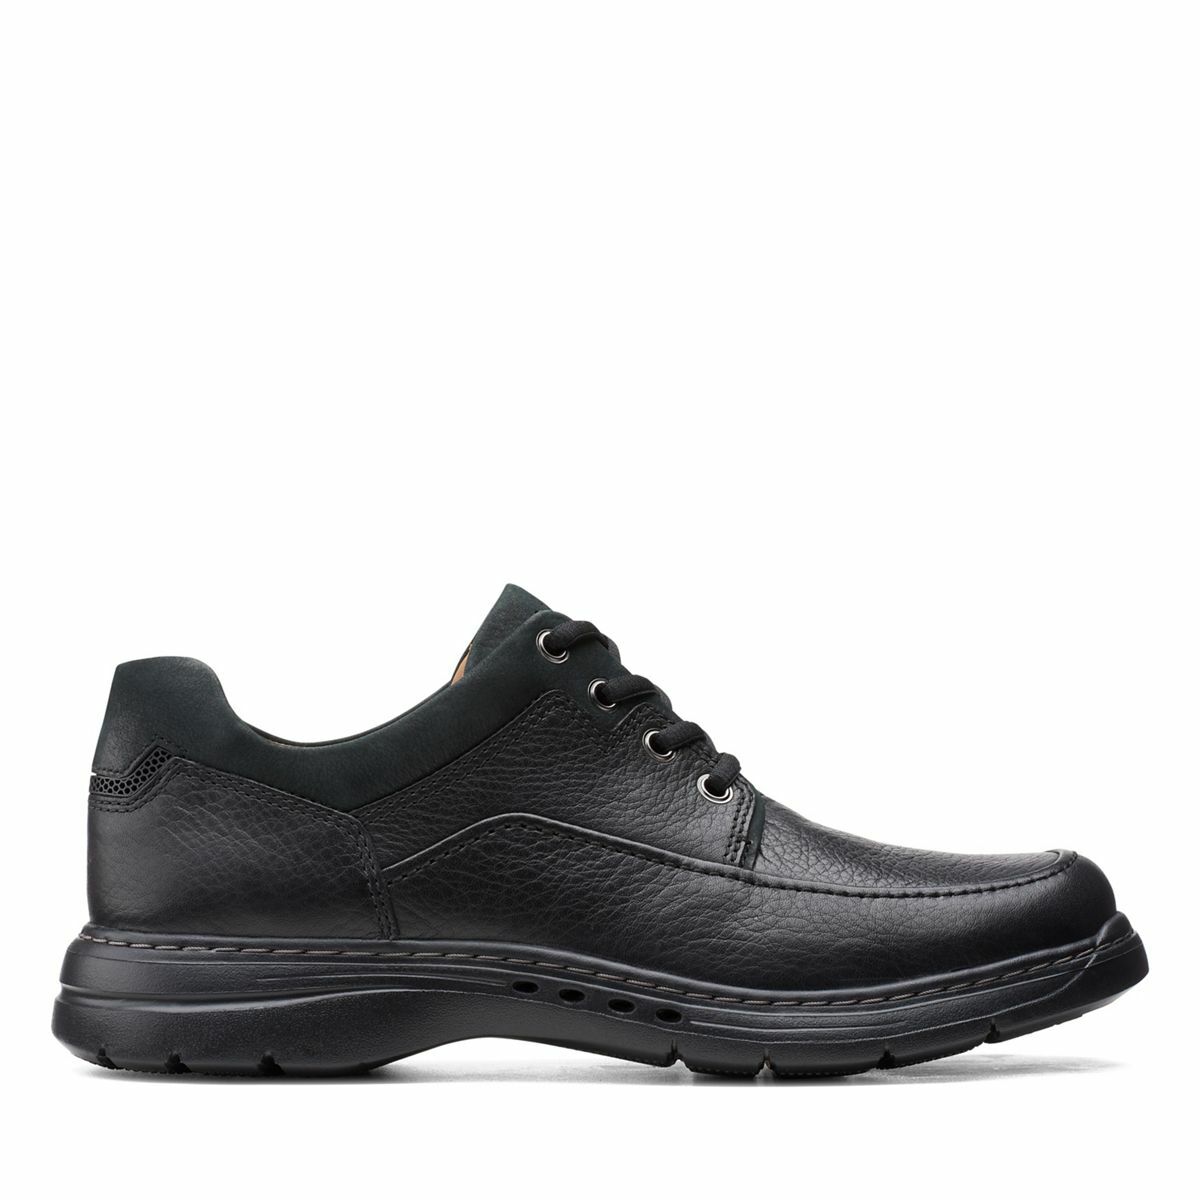 Clarks Men's Un Brawley Lace – Black – Miller Shoes